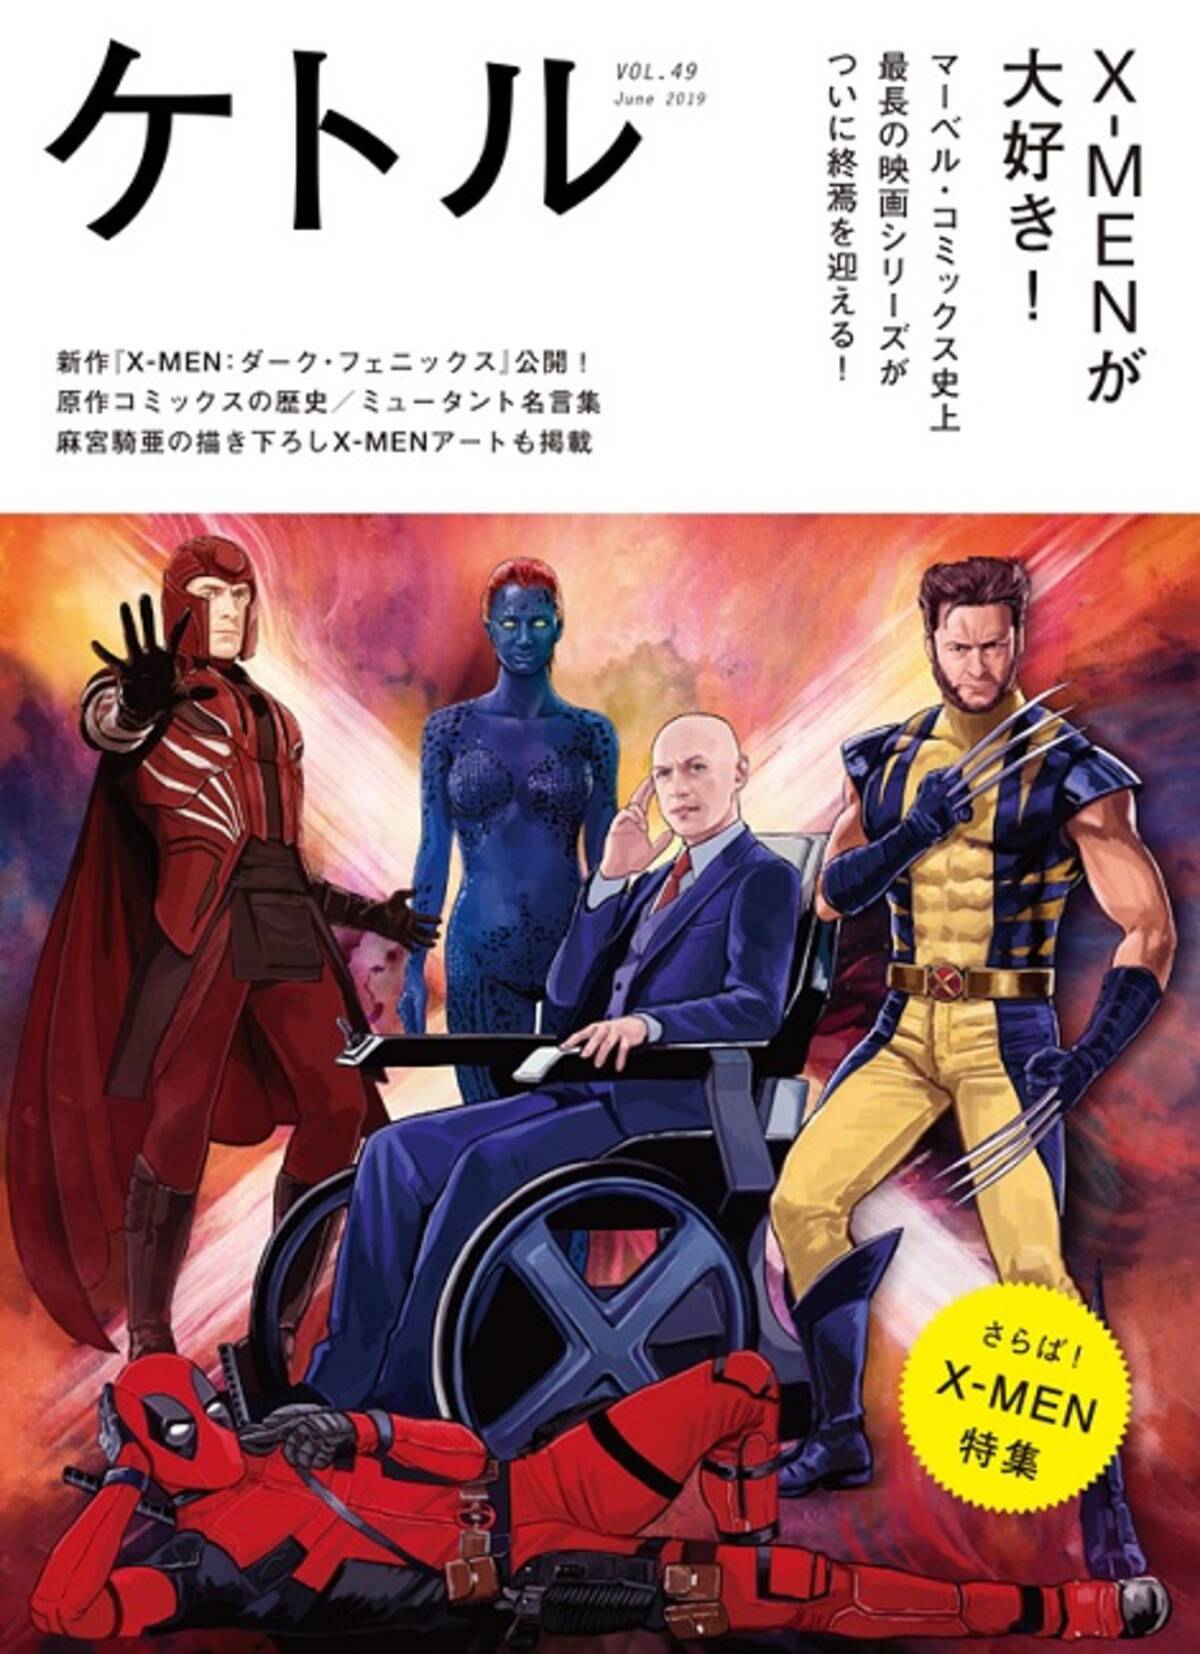 私生活では 2分に１か月半 日本の名車 X Men 映画トリビア集 19年7月5日 エキサイトニュース